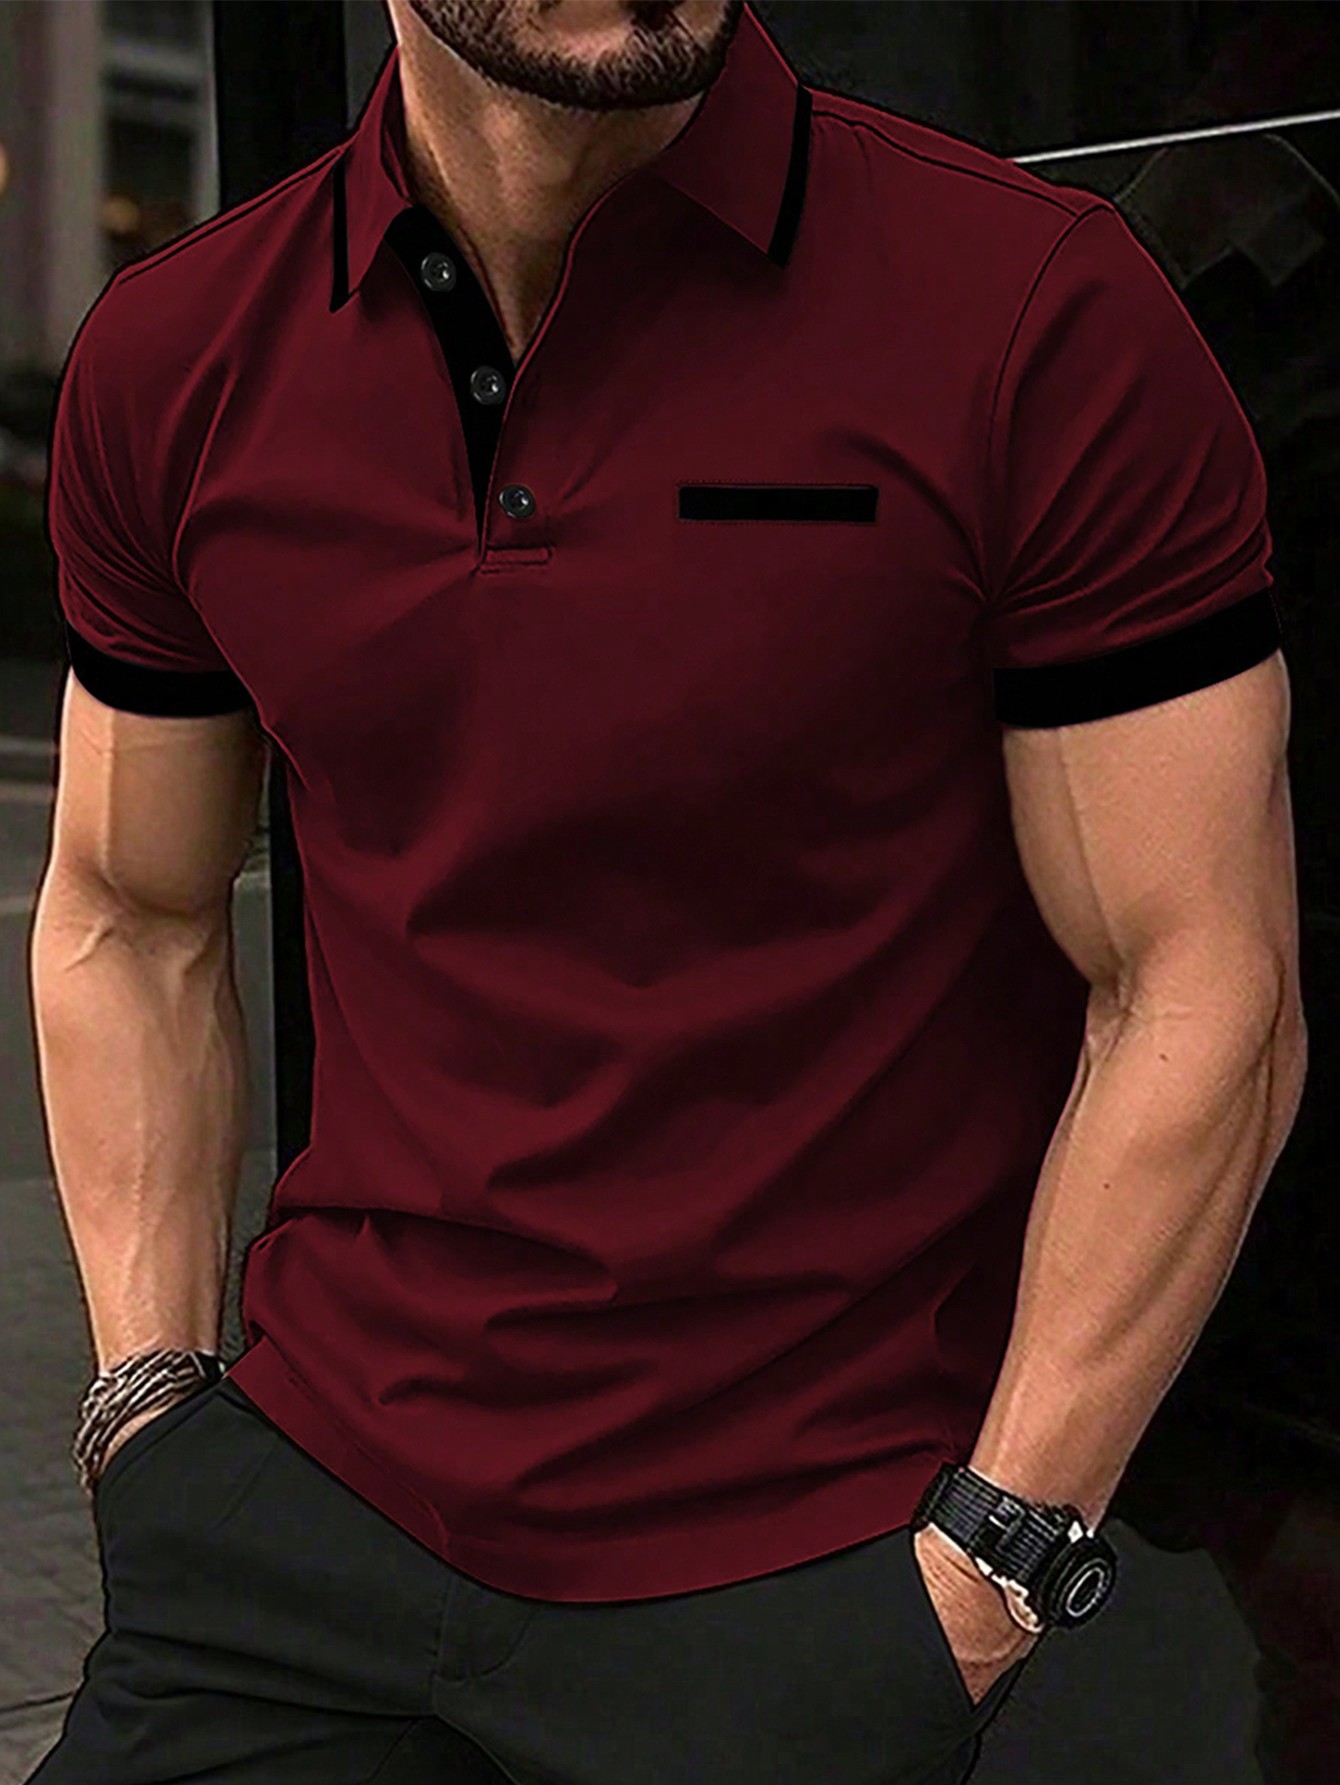 Мужская рубашка-поло контрастного цвета Manfinity Homme, бургундия